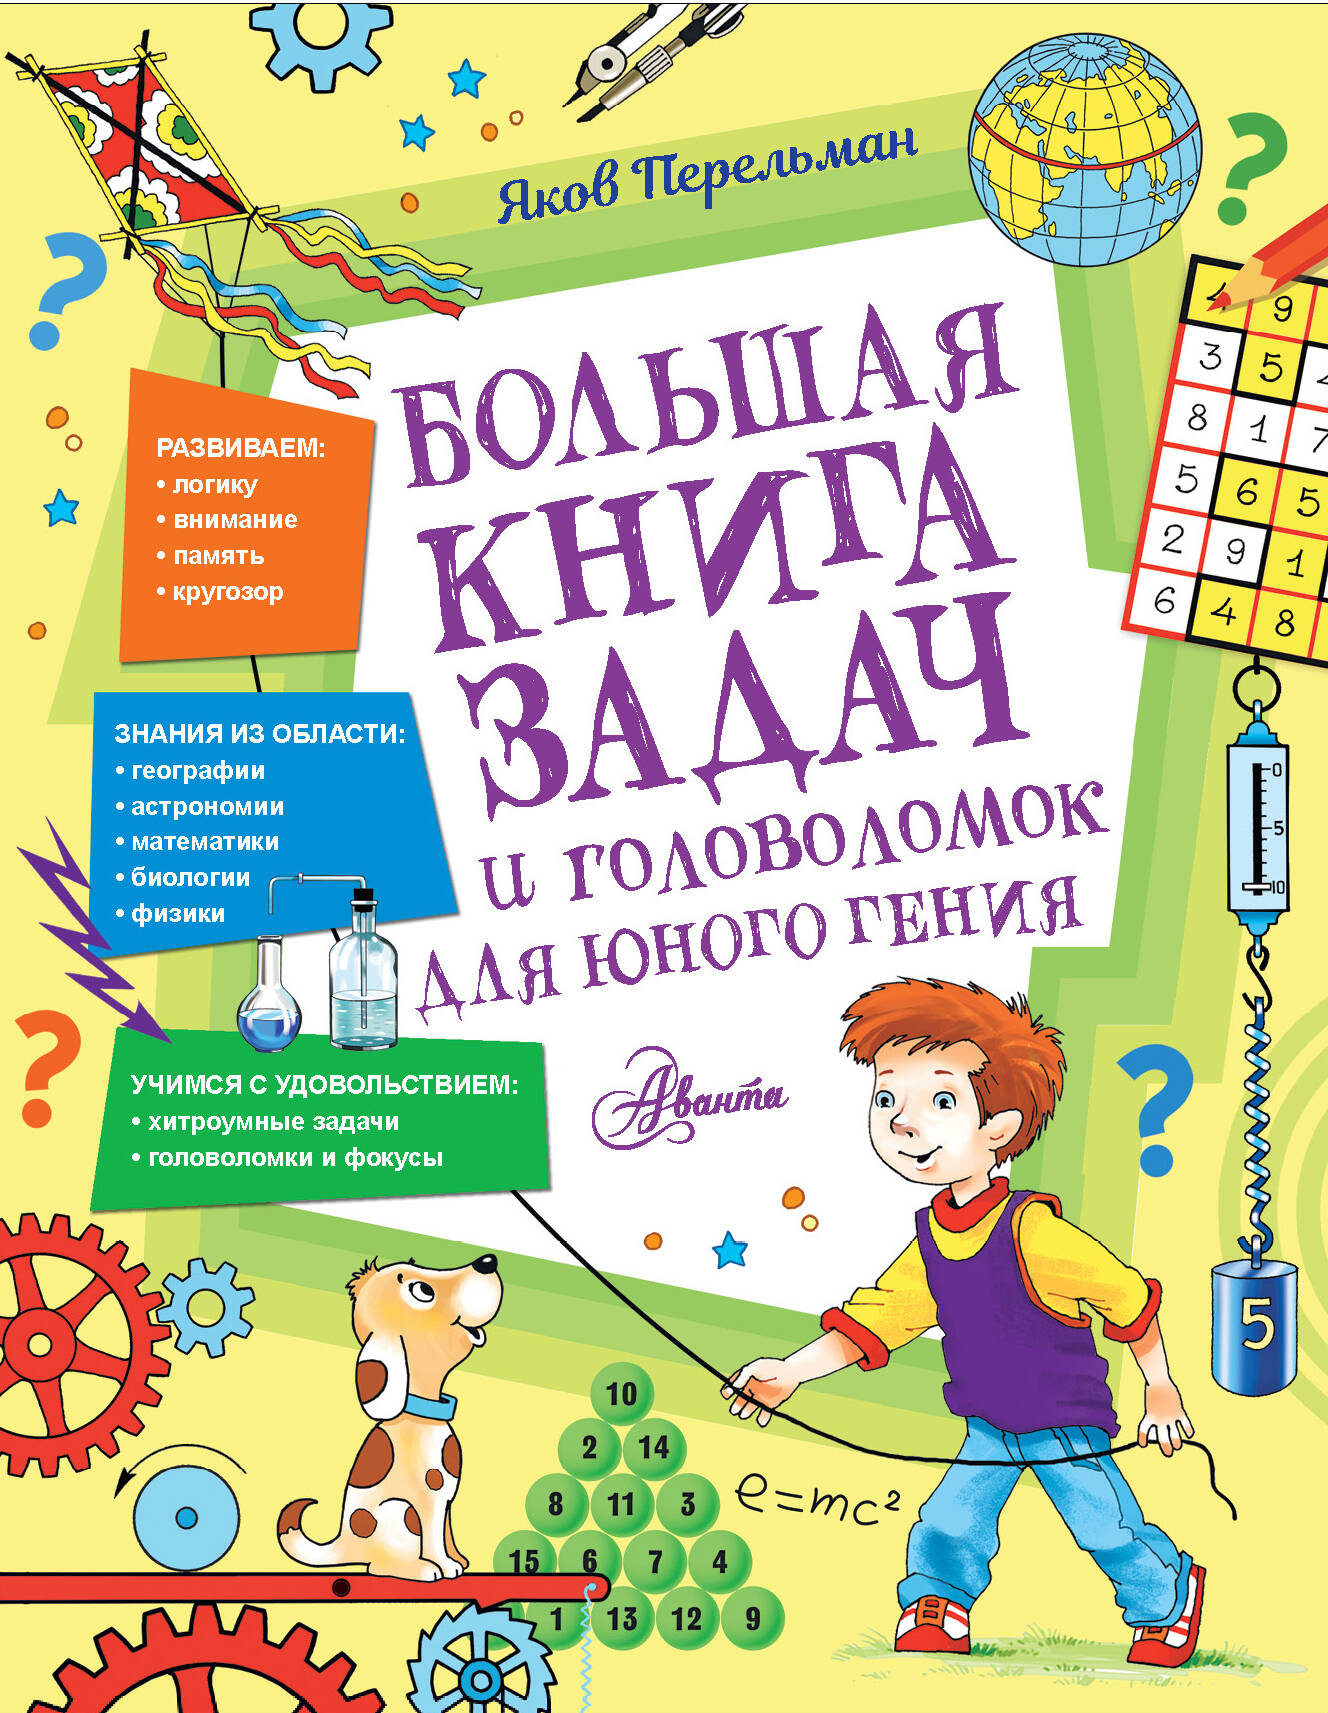 Большая книга задач и головоломок для юного гения перельман яков исидорович большая книга задач и головоломок для юного гения